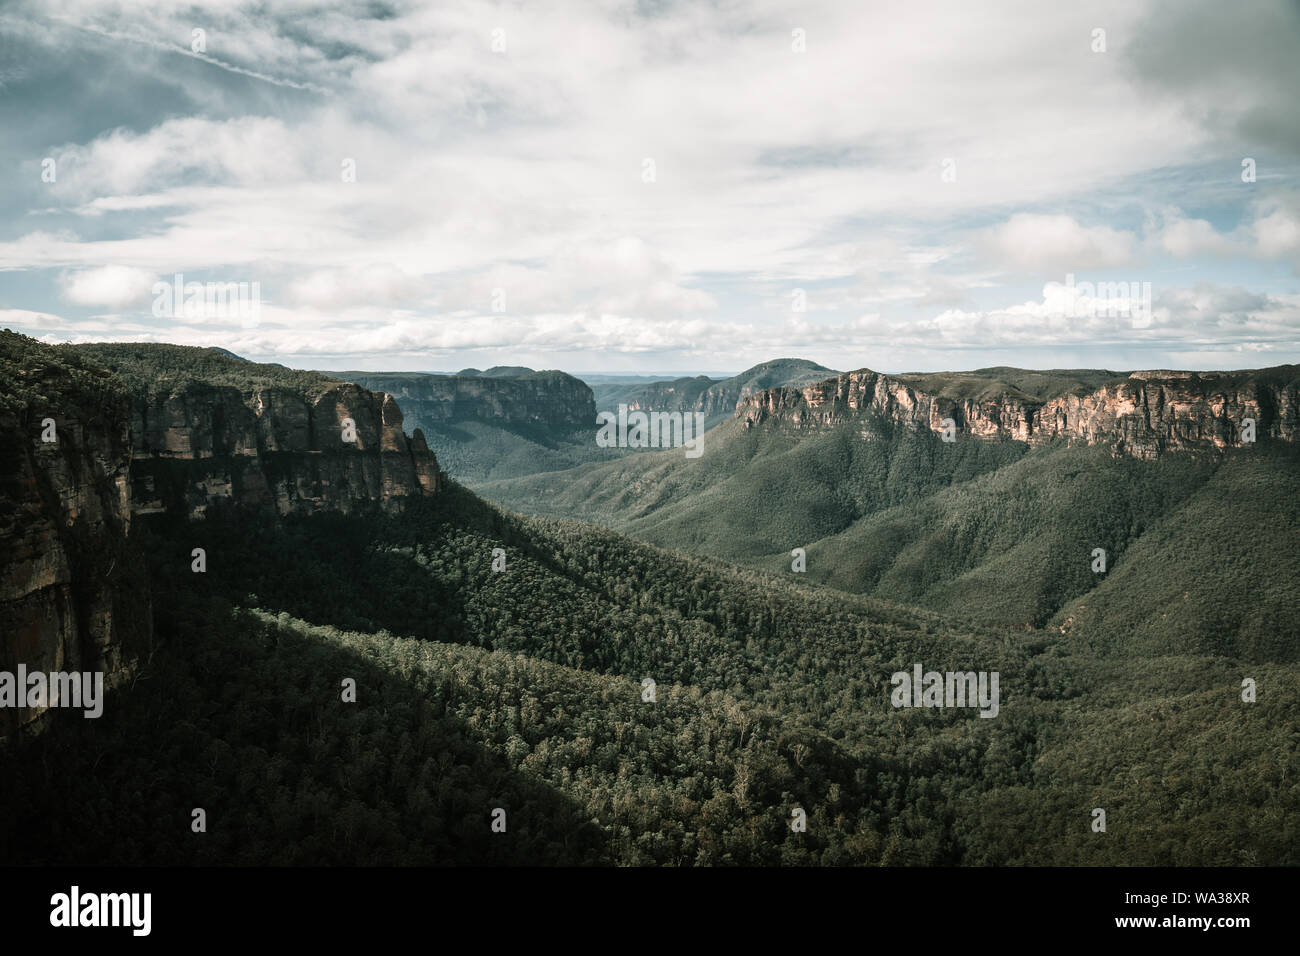 Una vista mozzafiato sulle montagne da Govett's Leap Lookout, nelle Blue Mountains NSW. Foto Stock